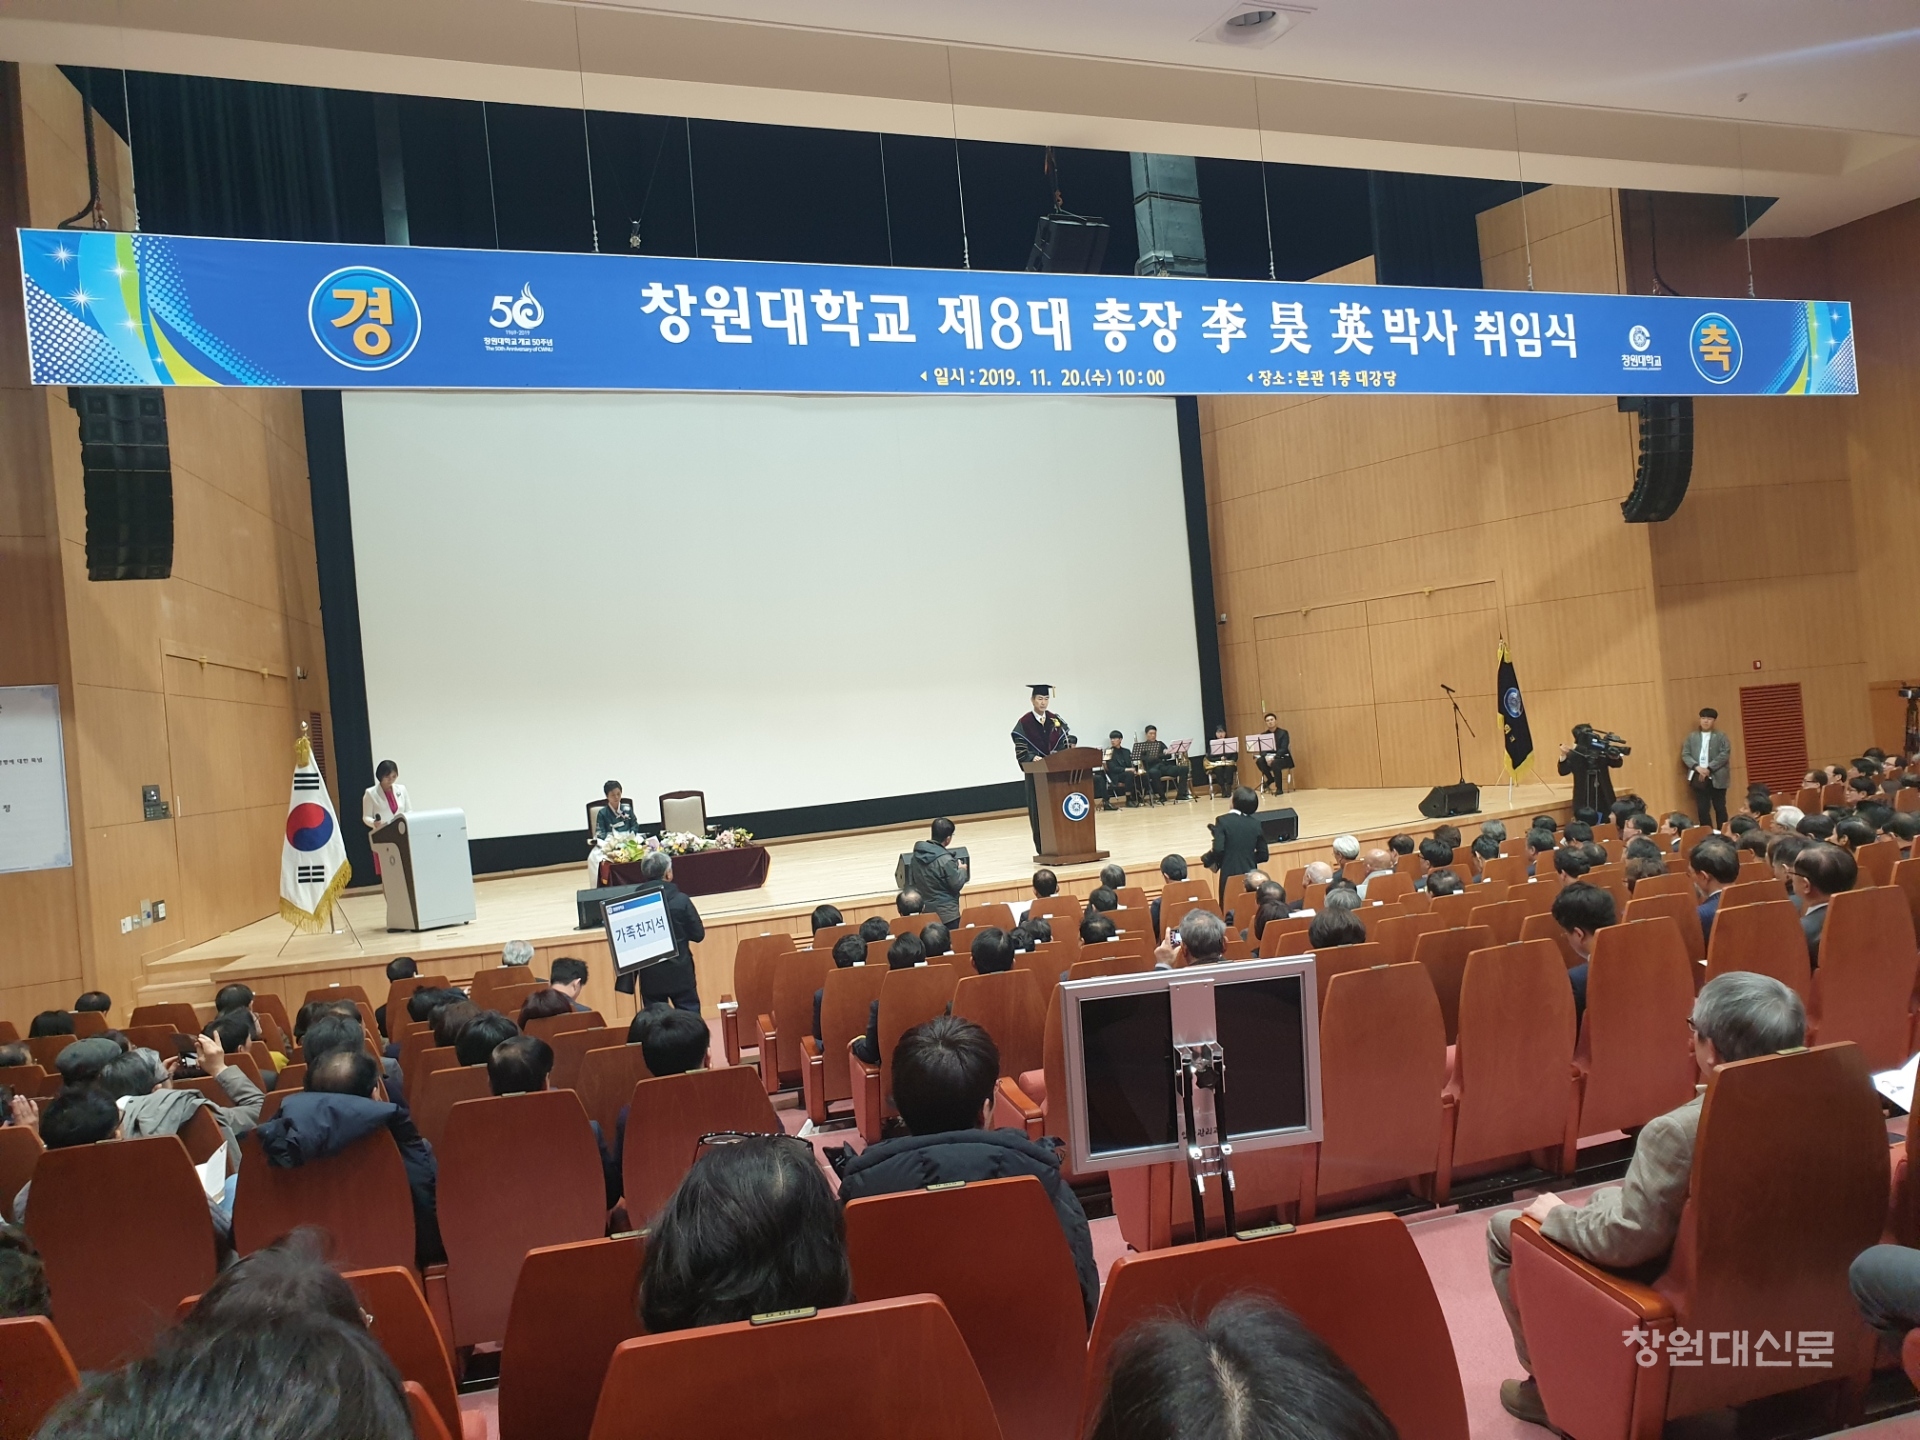 제8대 이호영 총장 취임식 개최